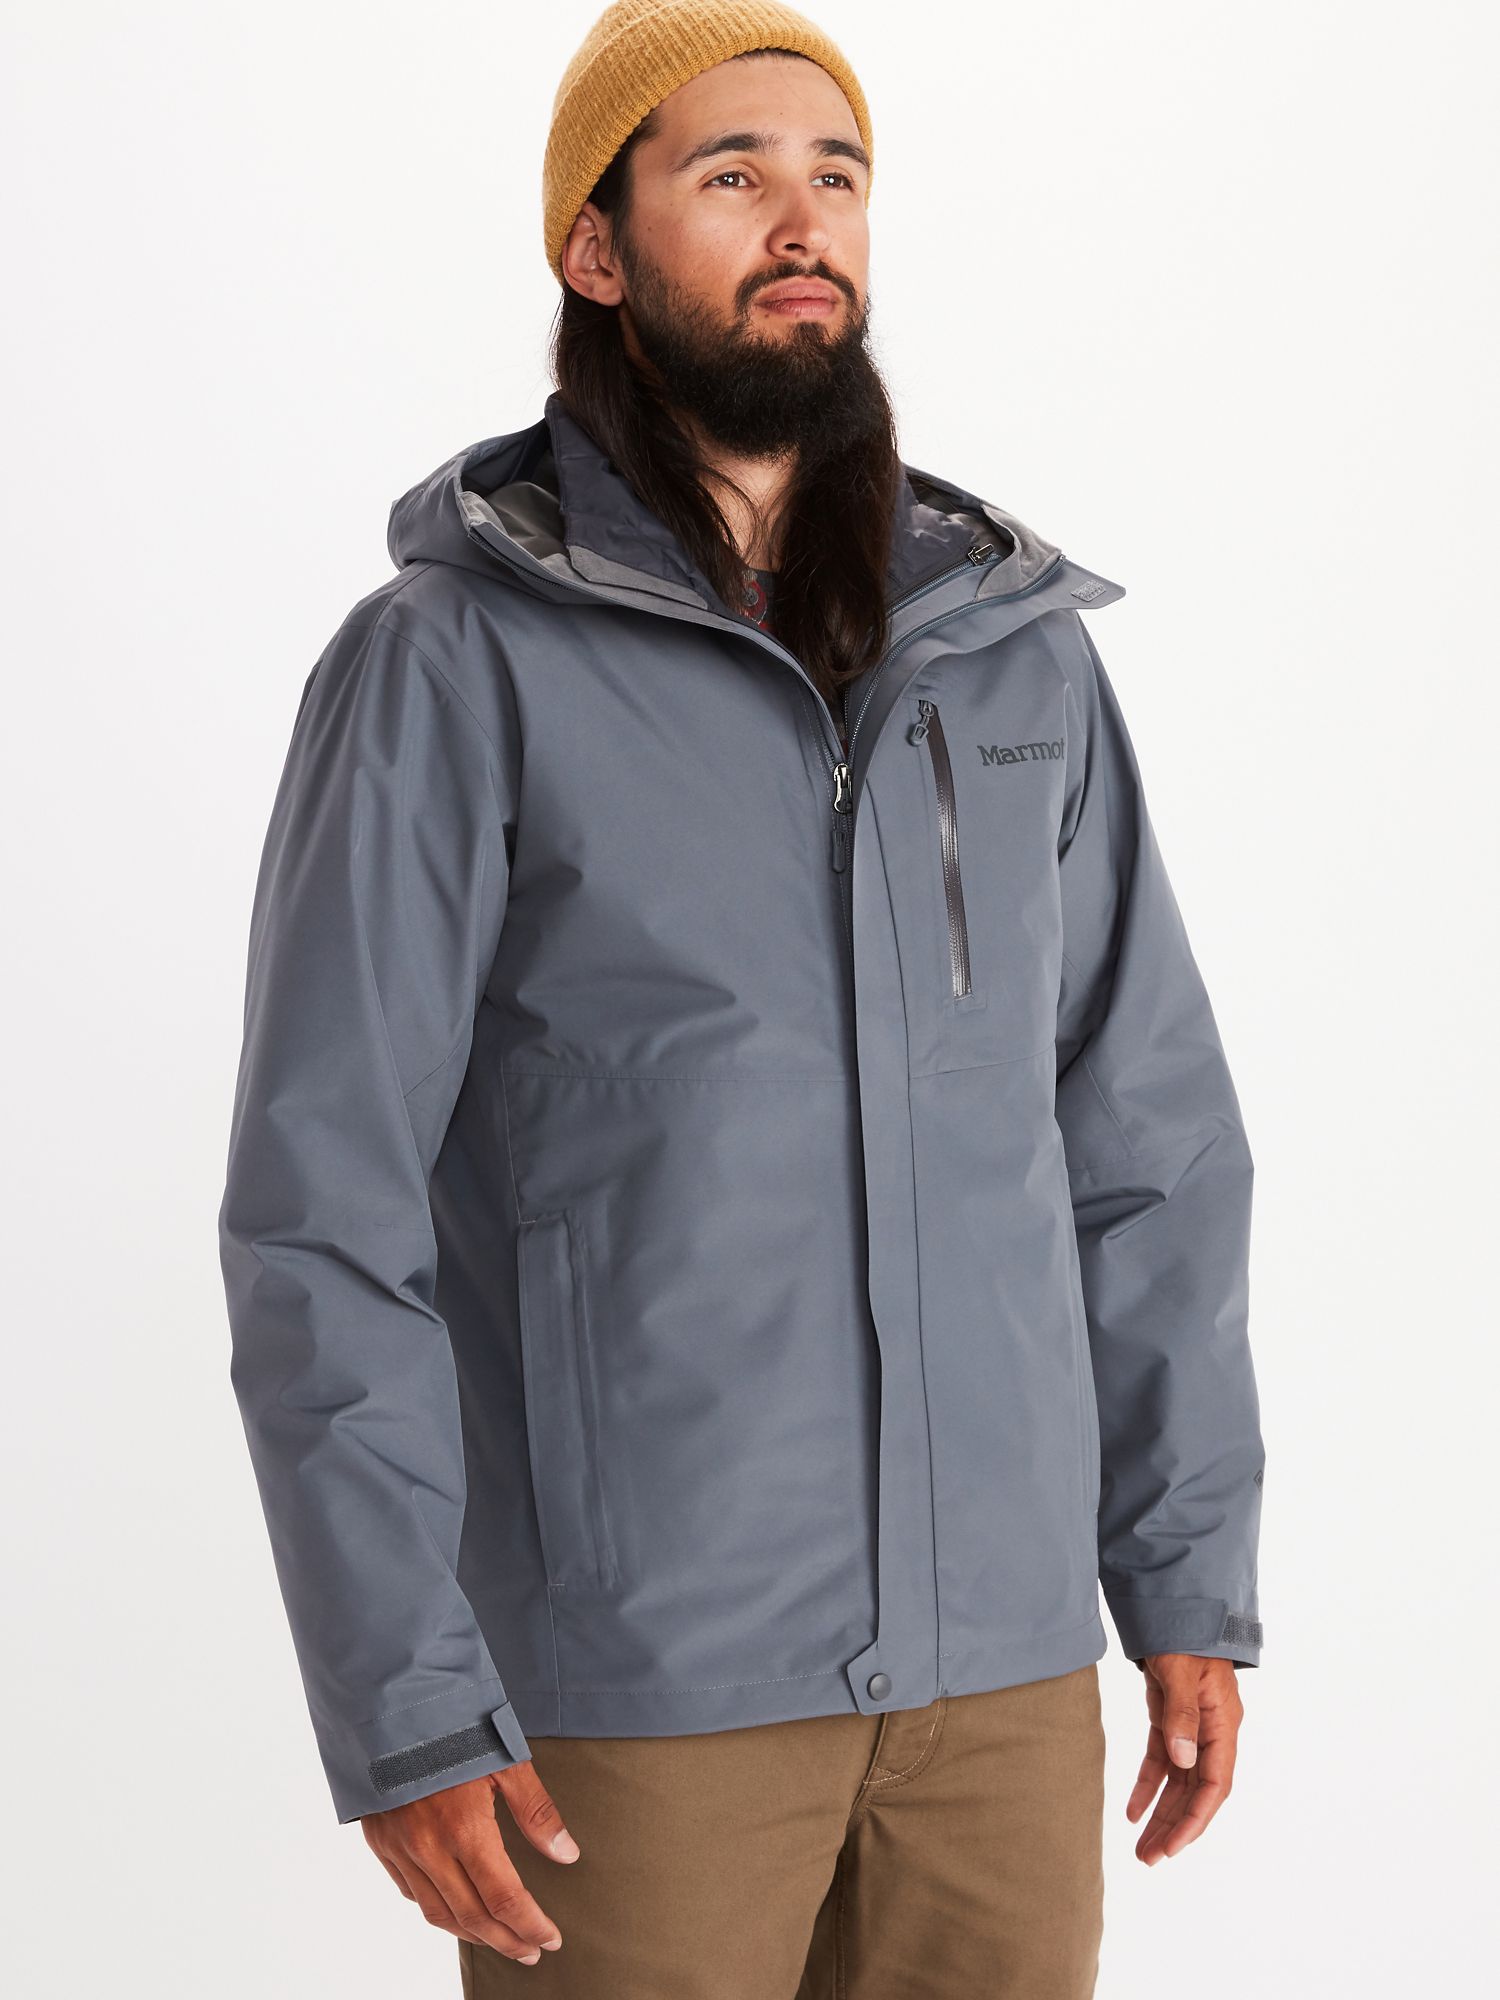 marmot triclimate jacket